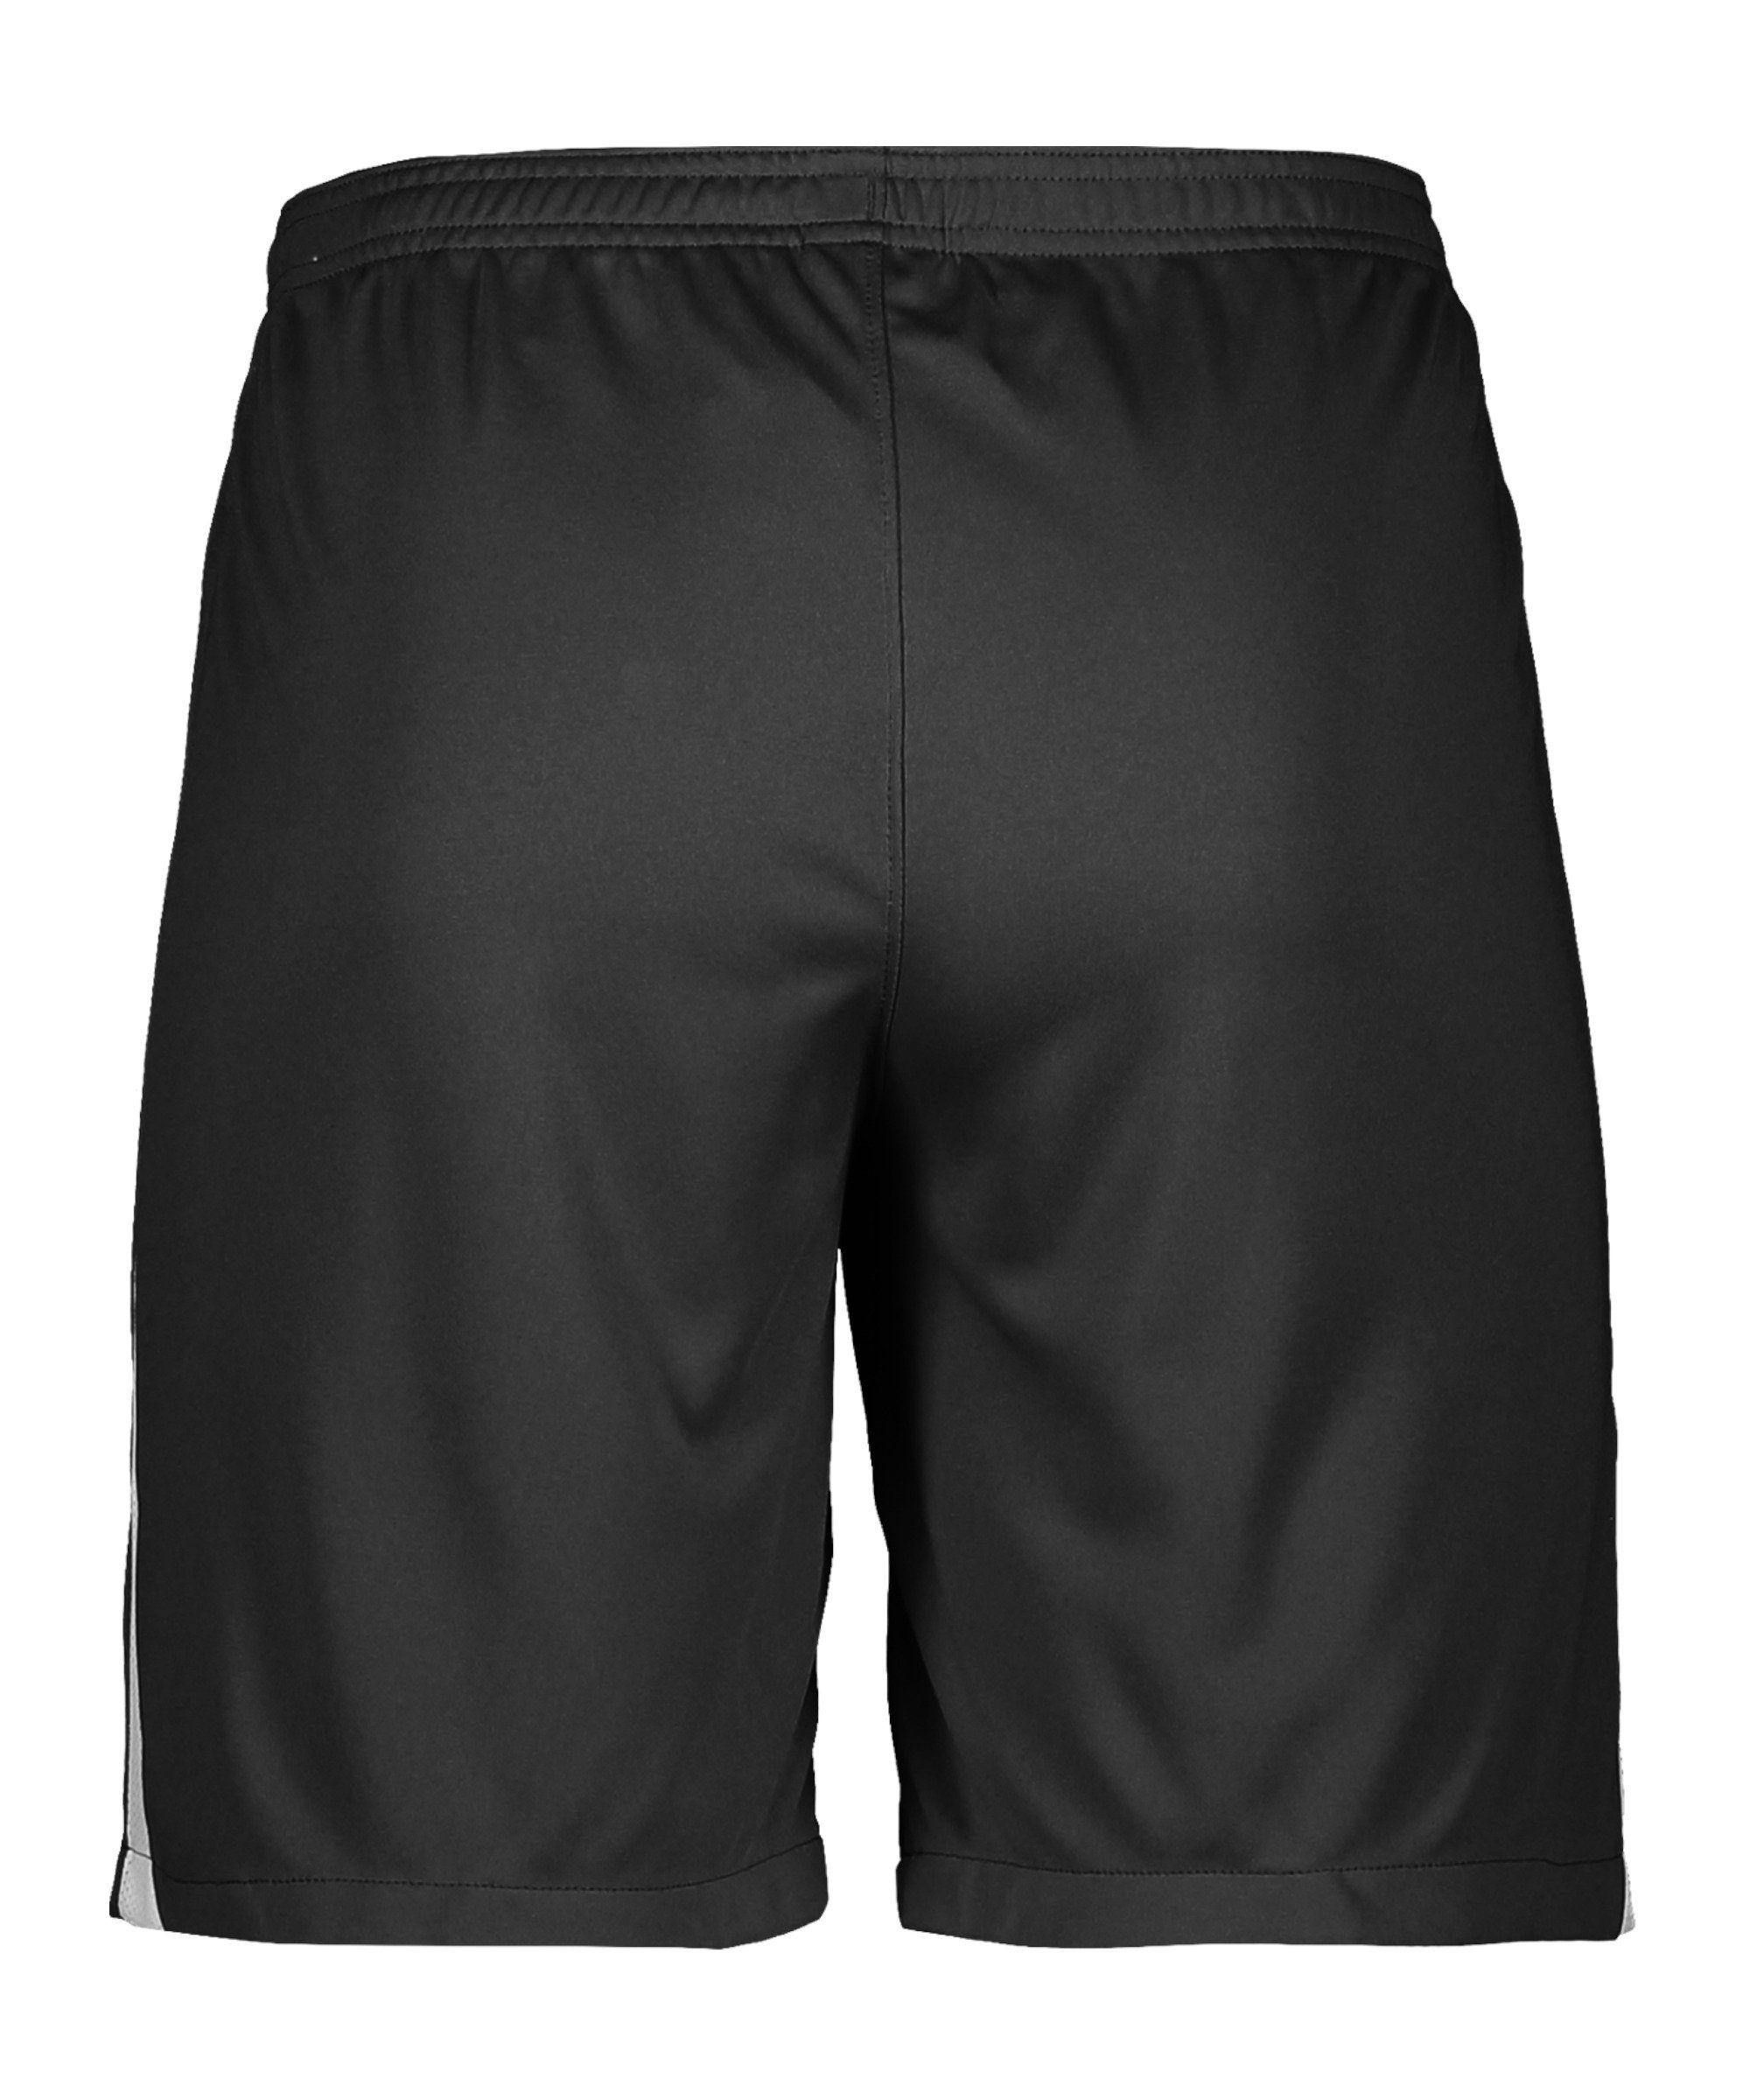 League schwarzweissweiss Nike Short III Sporthose